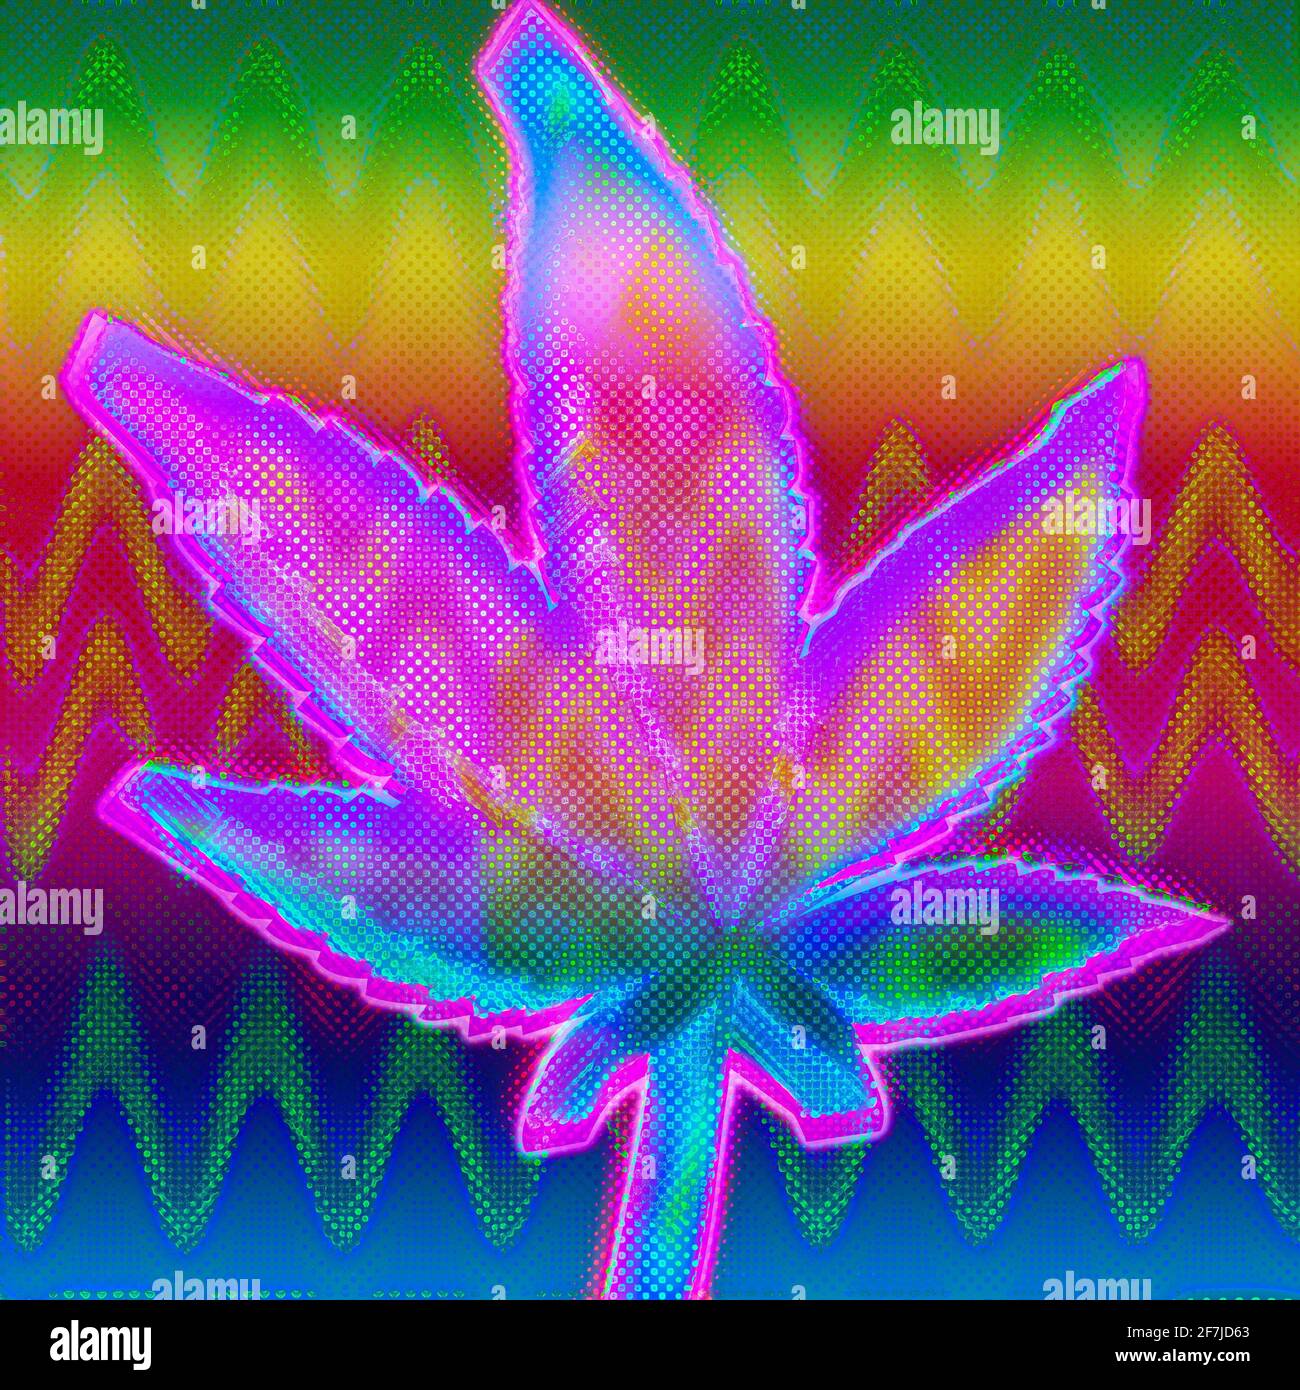 Ein abstraktes psychedelischer Grunge-Cannabisblatt-Hintergrundbild Stockfoto